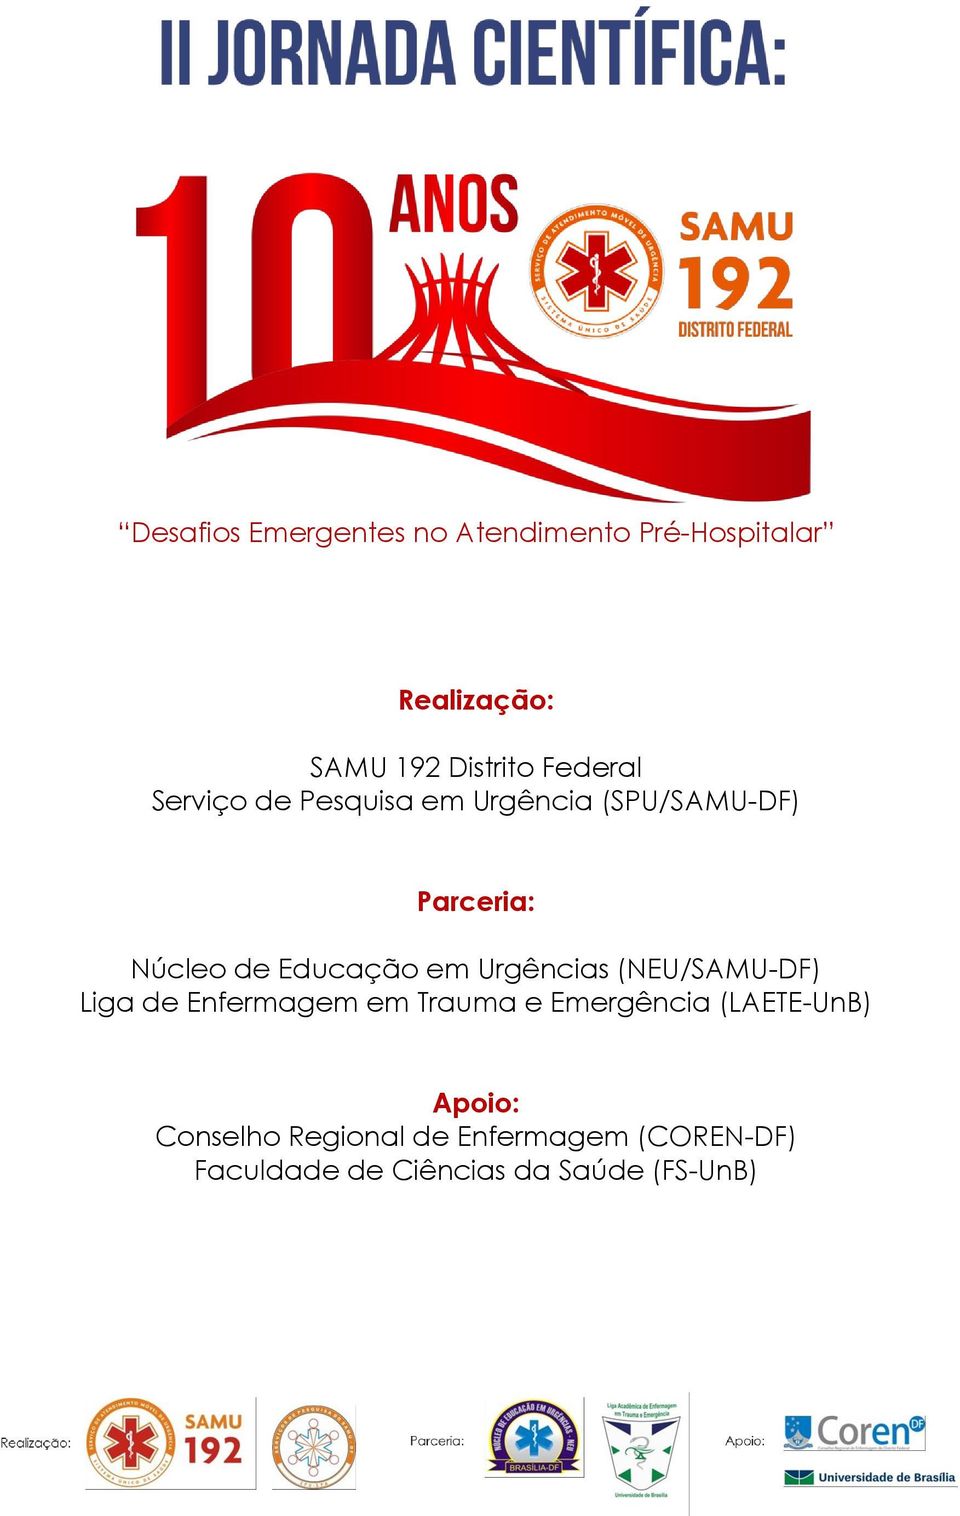 em Urgências (NEU/SAMU-DF) Liga de Enfermagem em Trauma e Emergência (LAETE-UnB)